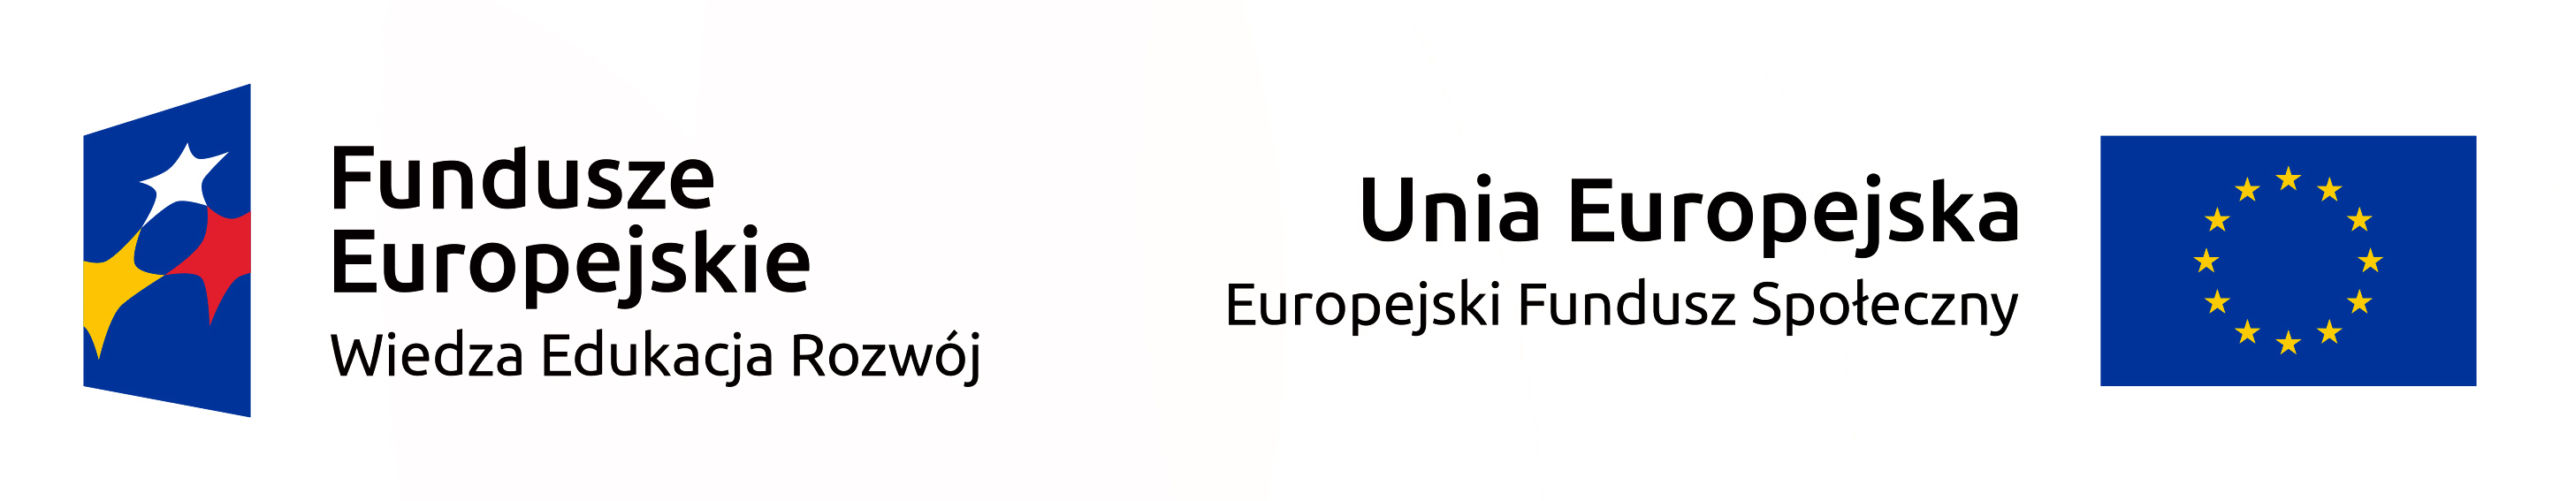 logo Fundusze europejskie